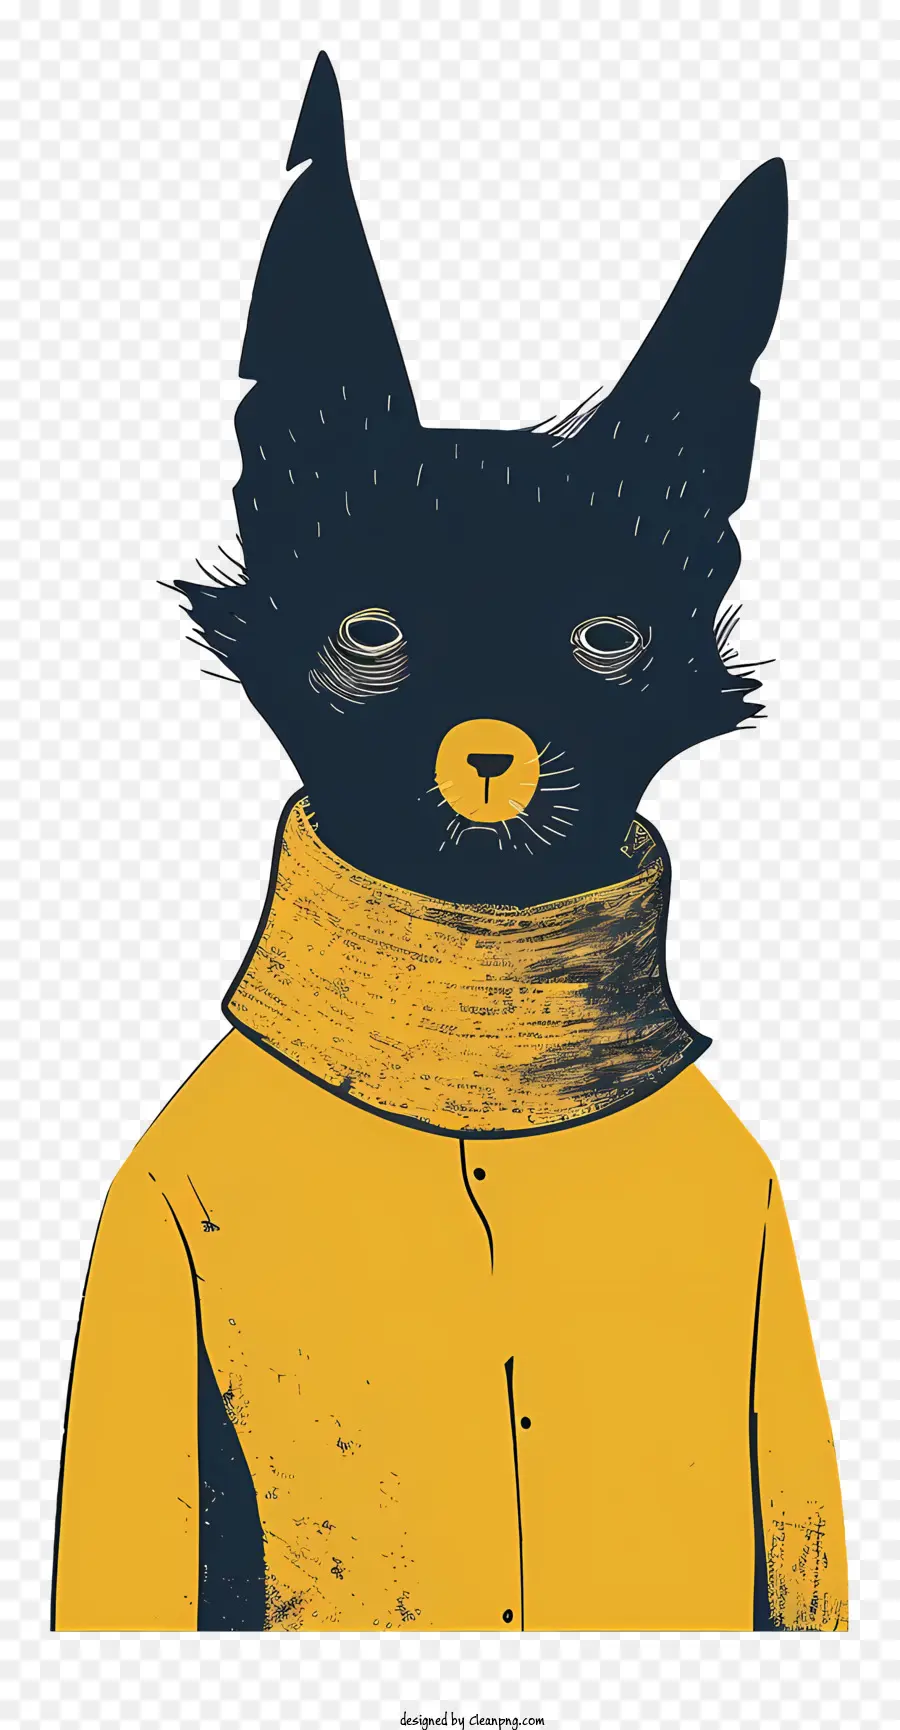 phim hoạt hình mèo - Mèo hoạt hình trong áo len màu vàng, cổ áo đỏ